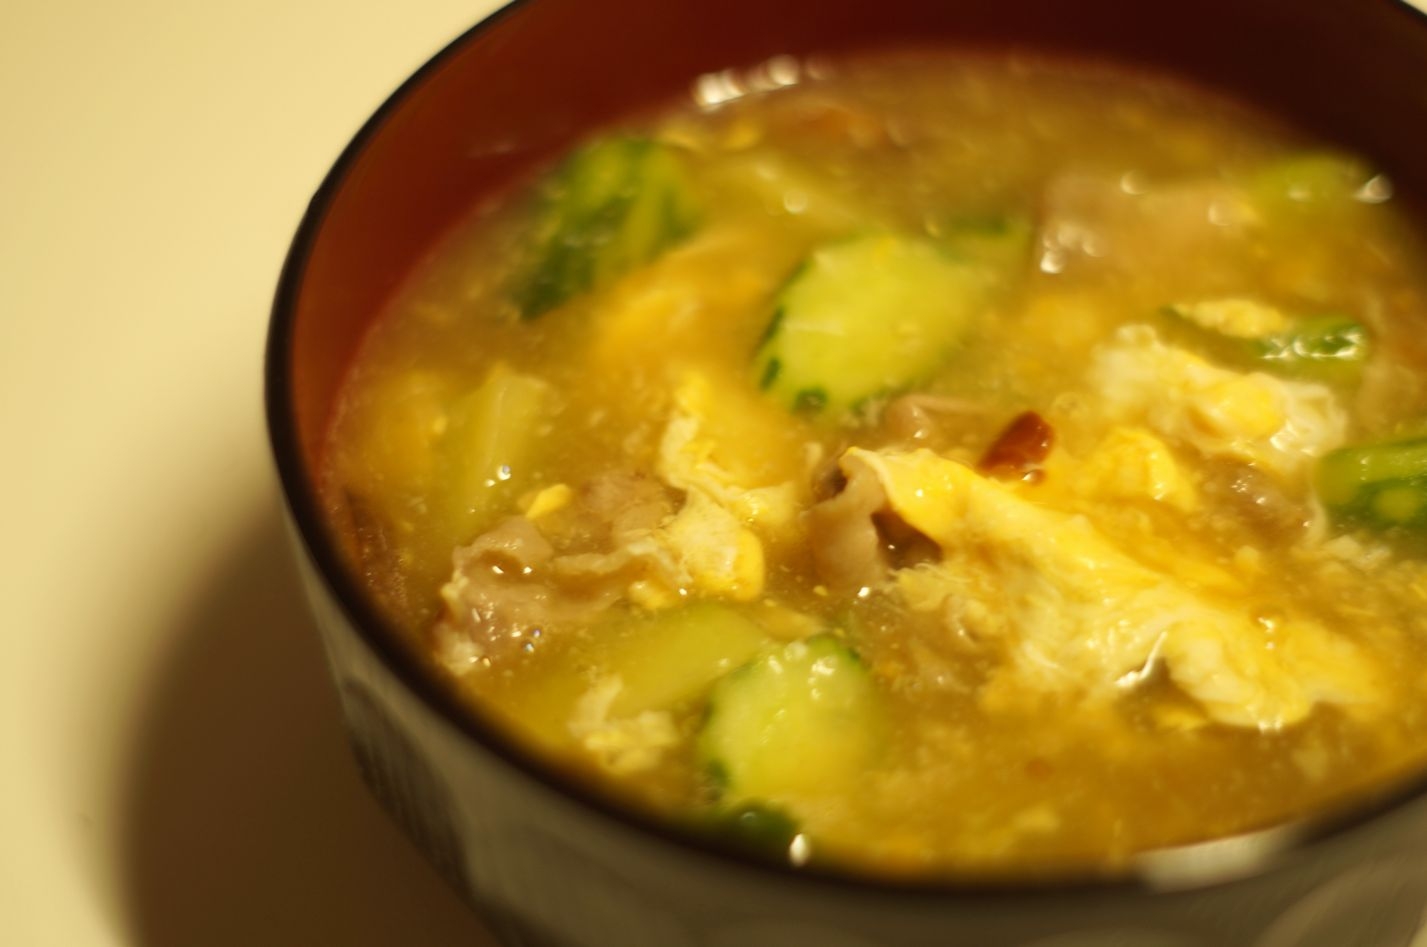 きゅうりと卵のピリ辛中華風スープ